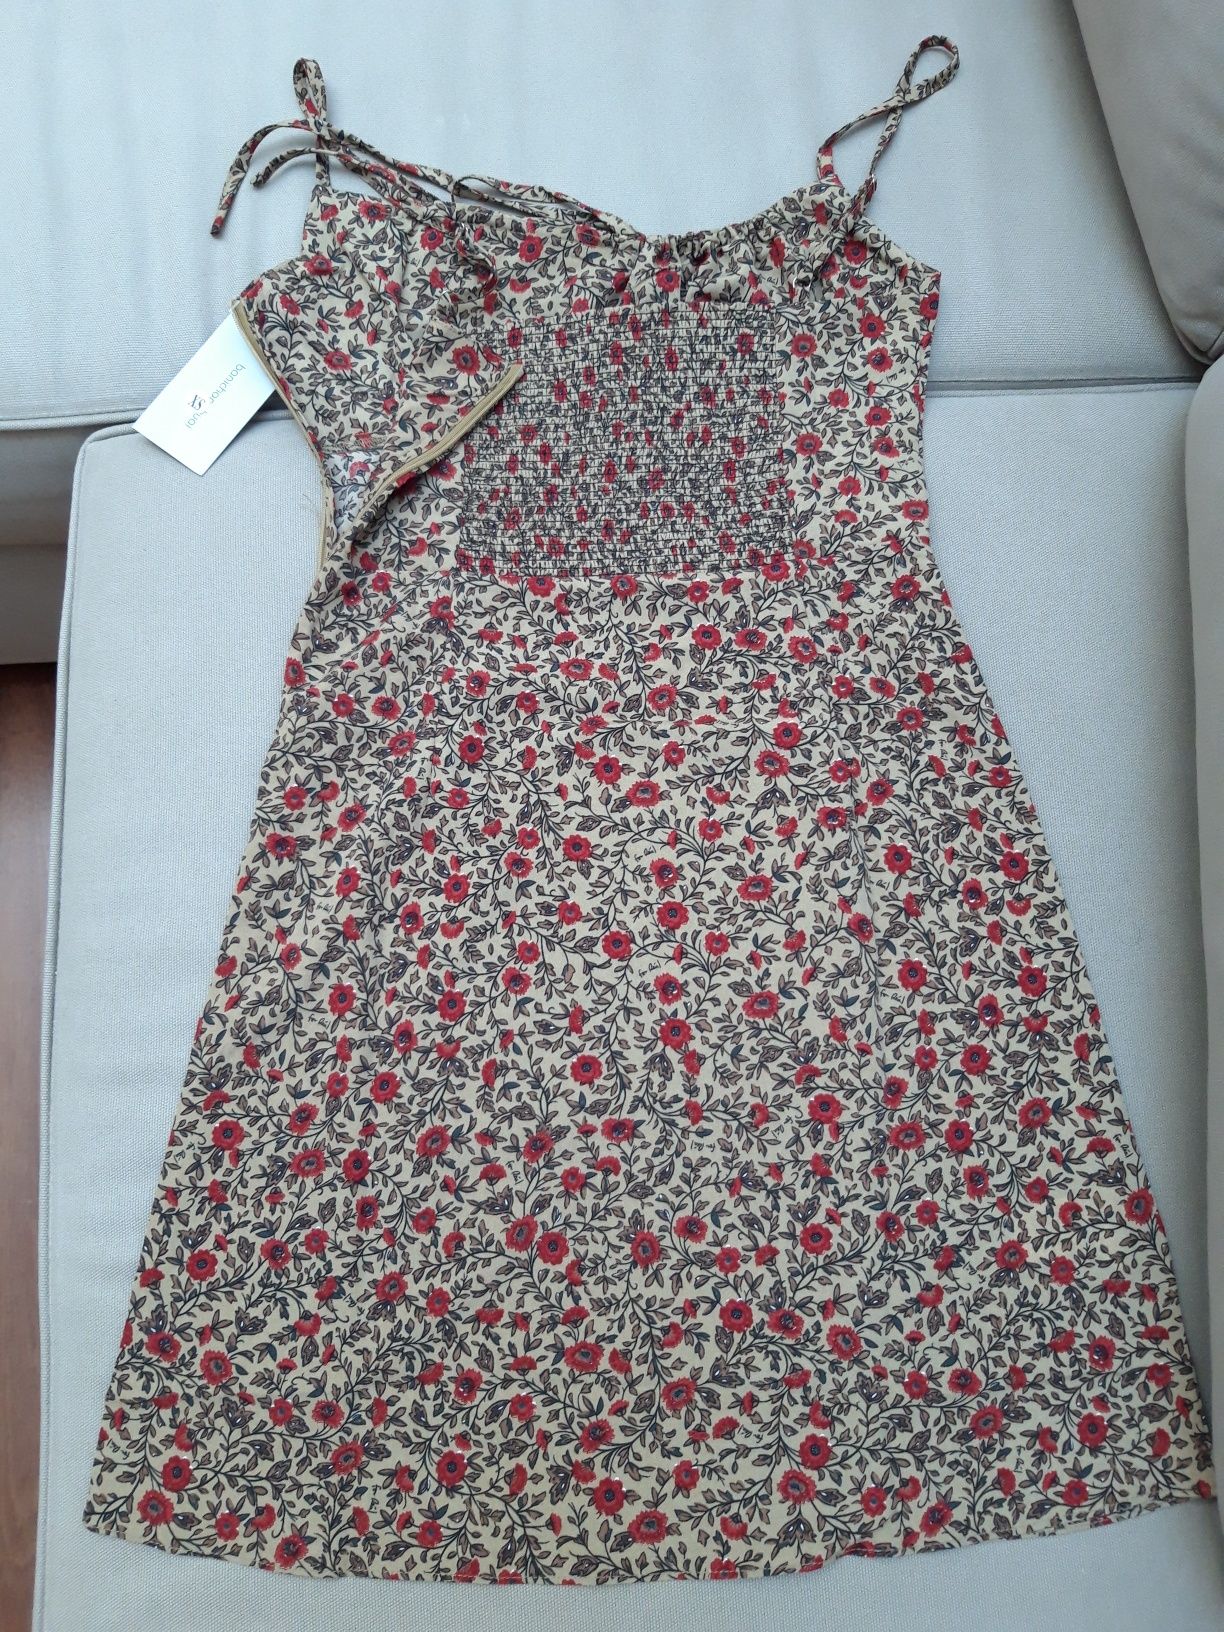 Vestido de Verão c/ padrões florais vintage - bege/vermelho XS-S NOVO!